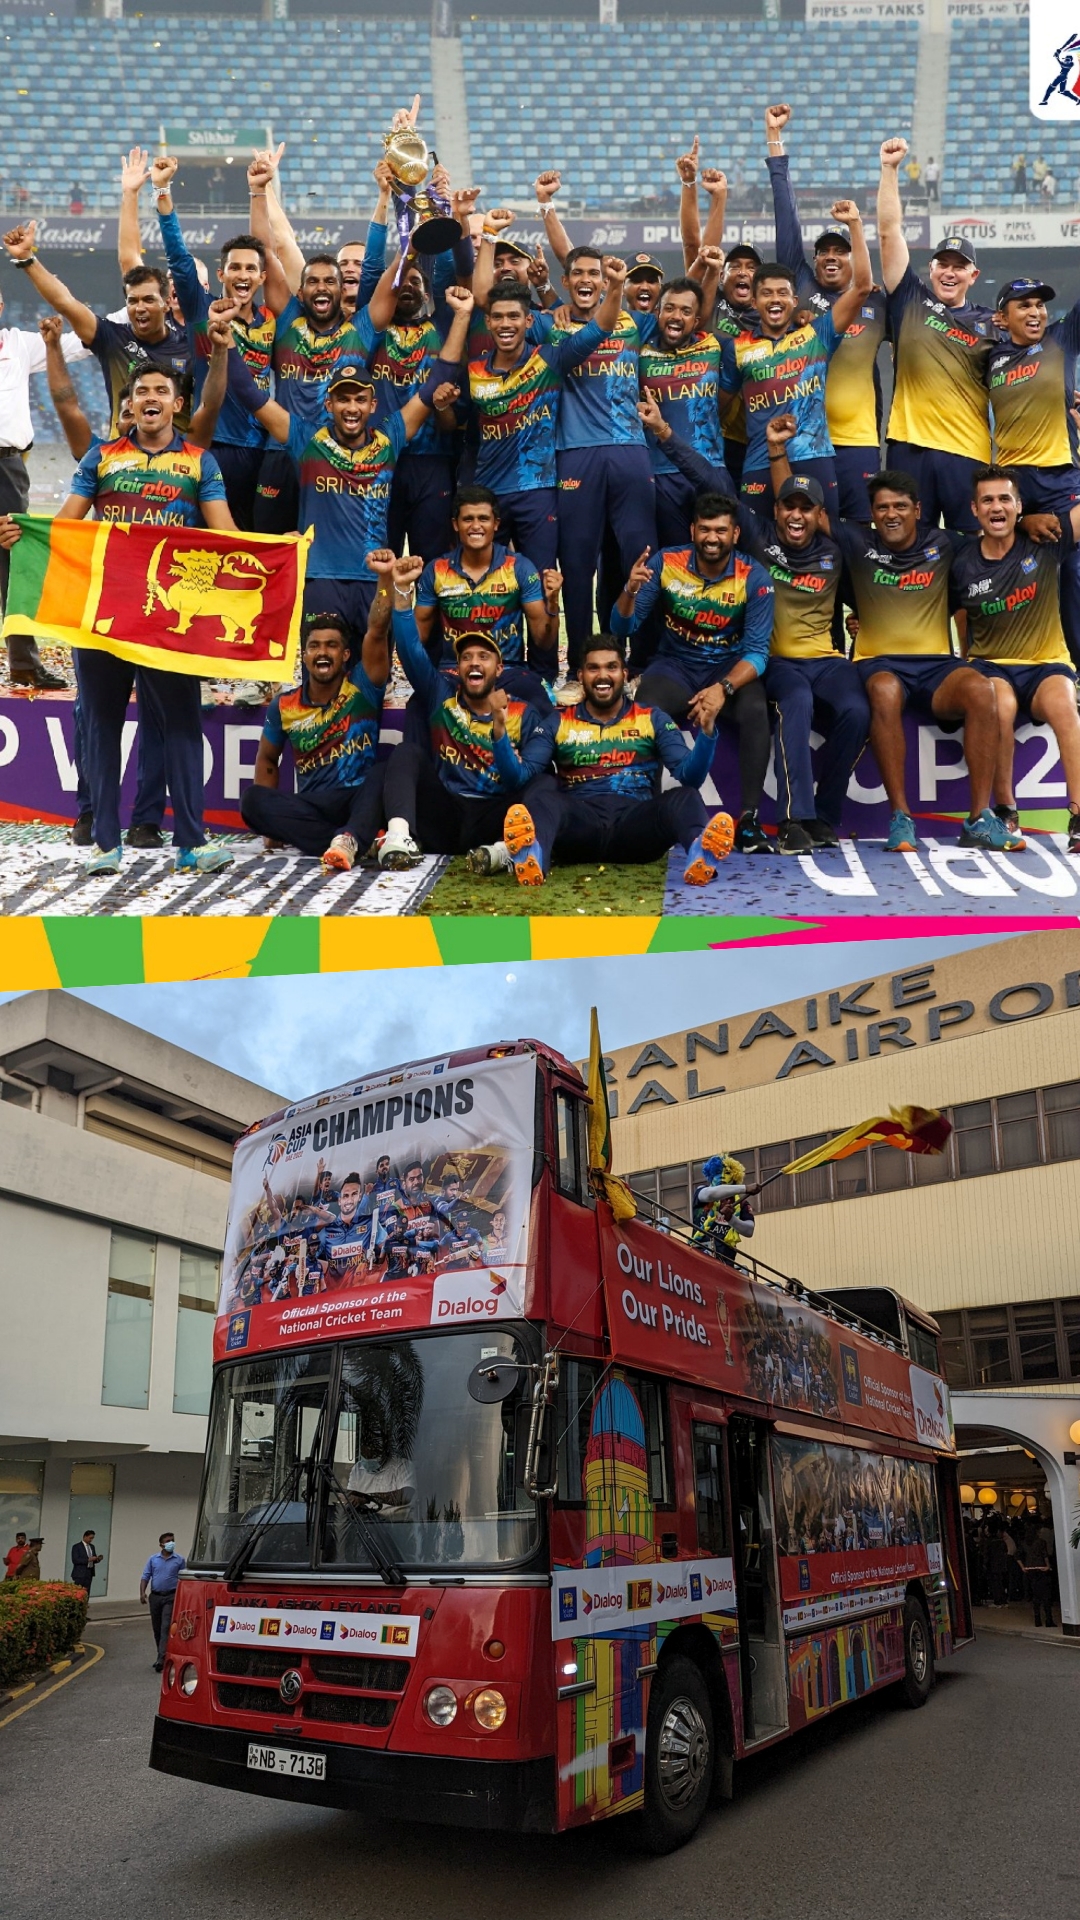 श्रीलंका ने मनाया Asia Cup जीत का जोरदार जश्न, देखें तस्वीरें